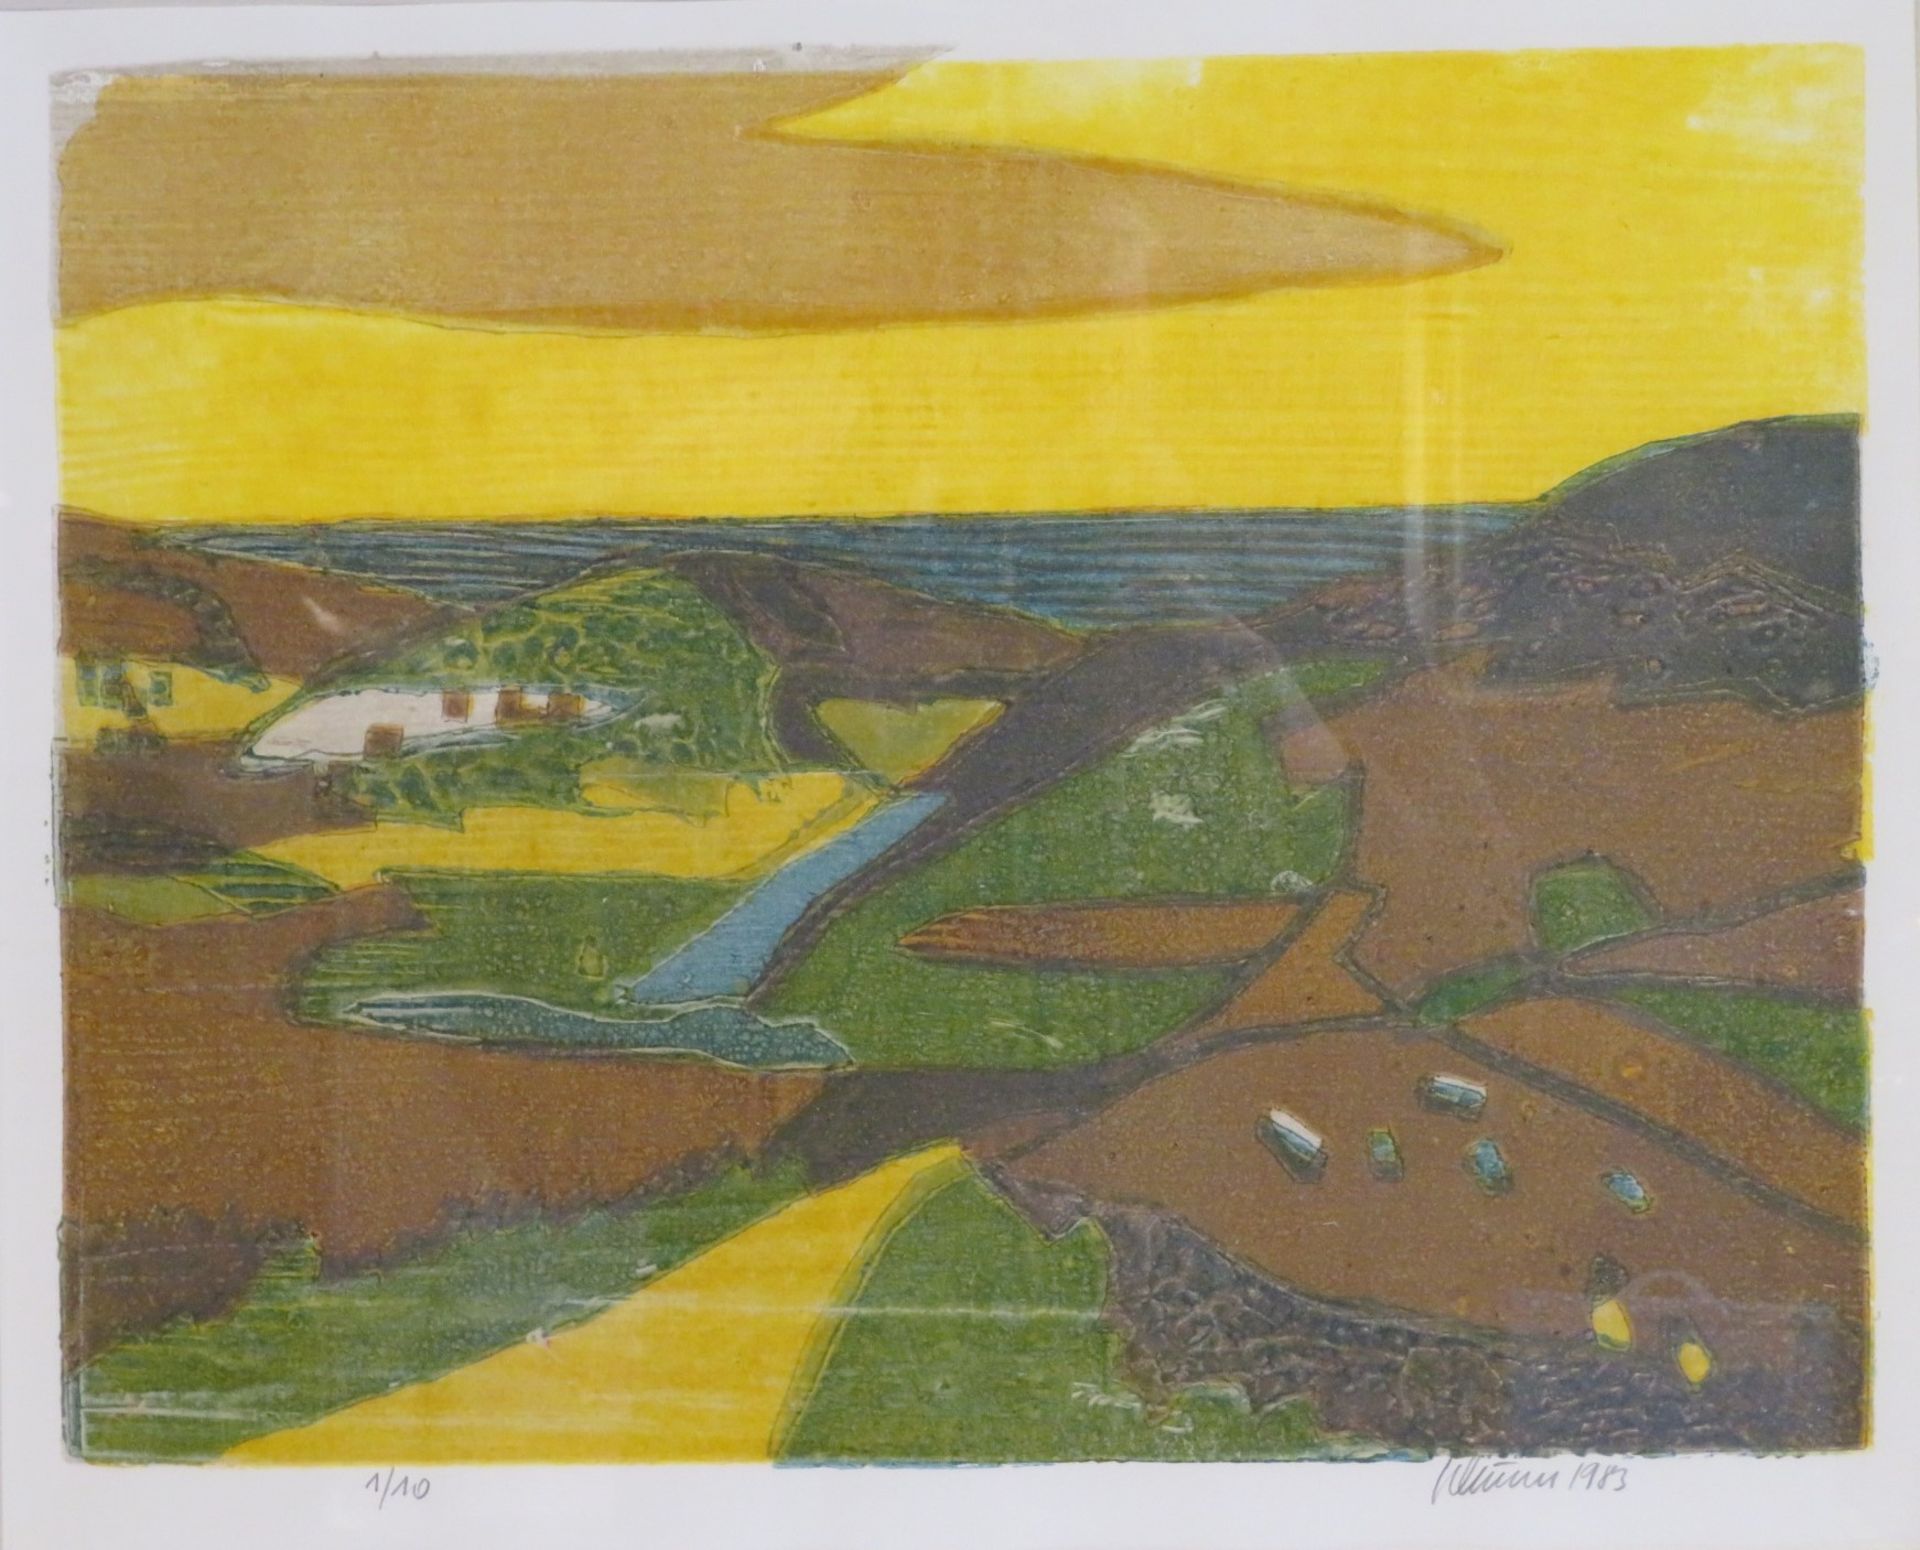 Unbekannt, "Landschaft am See", Farblithografie, Aufl. 1/10, re.u.unles.sign.u.dat. 1983, 34 x 44 c